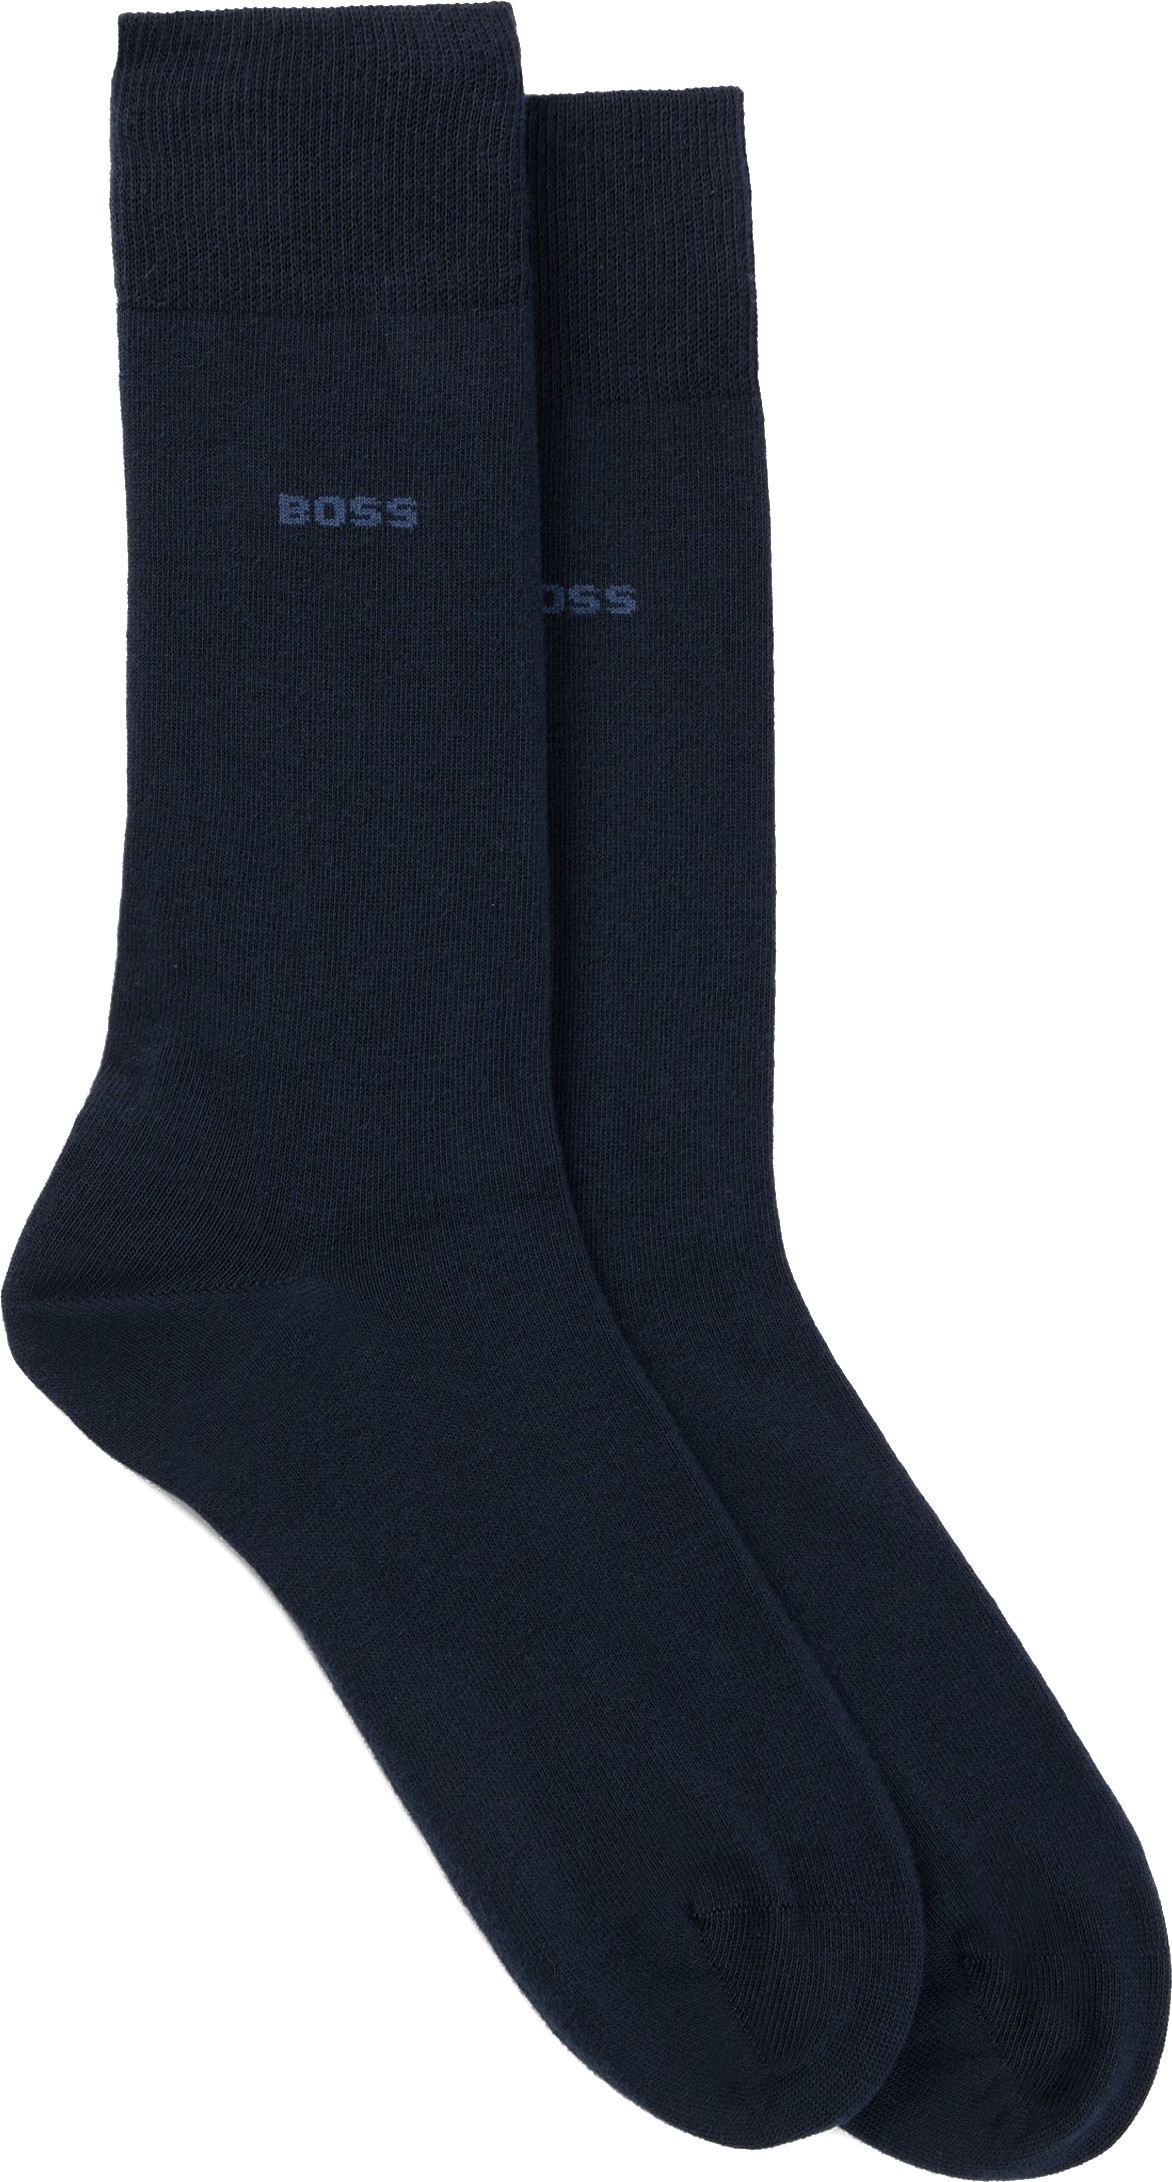 Hugo Boss 2 PACK - pánské ponožky BOSS 50516616-401 39-42